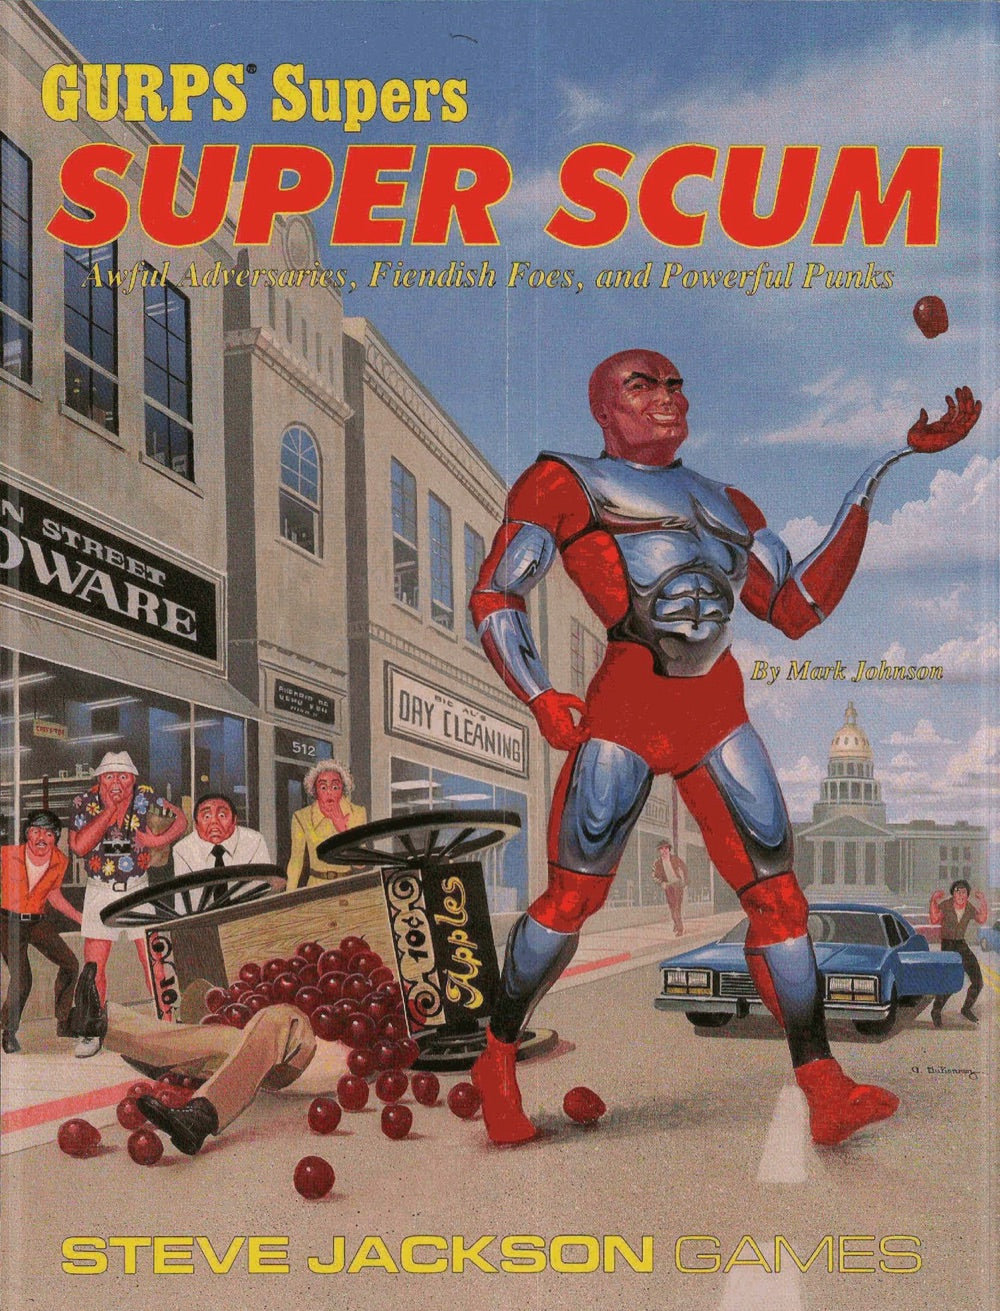 GURPS Classic: Supers: Super Scum